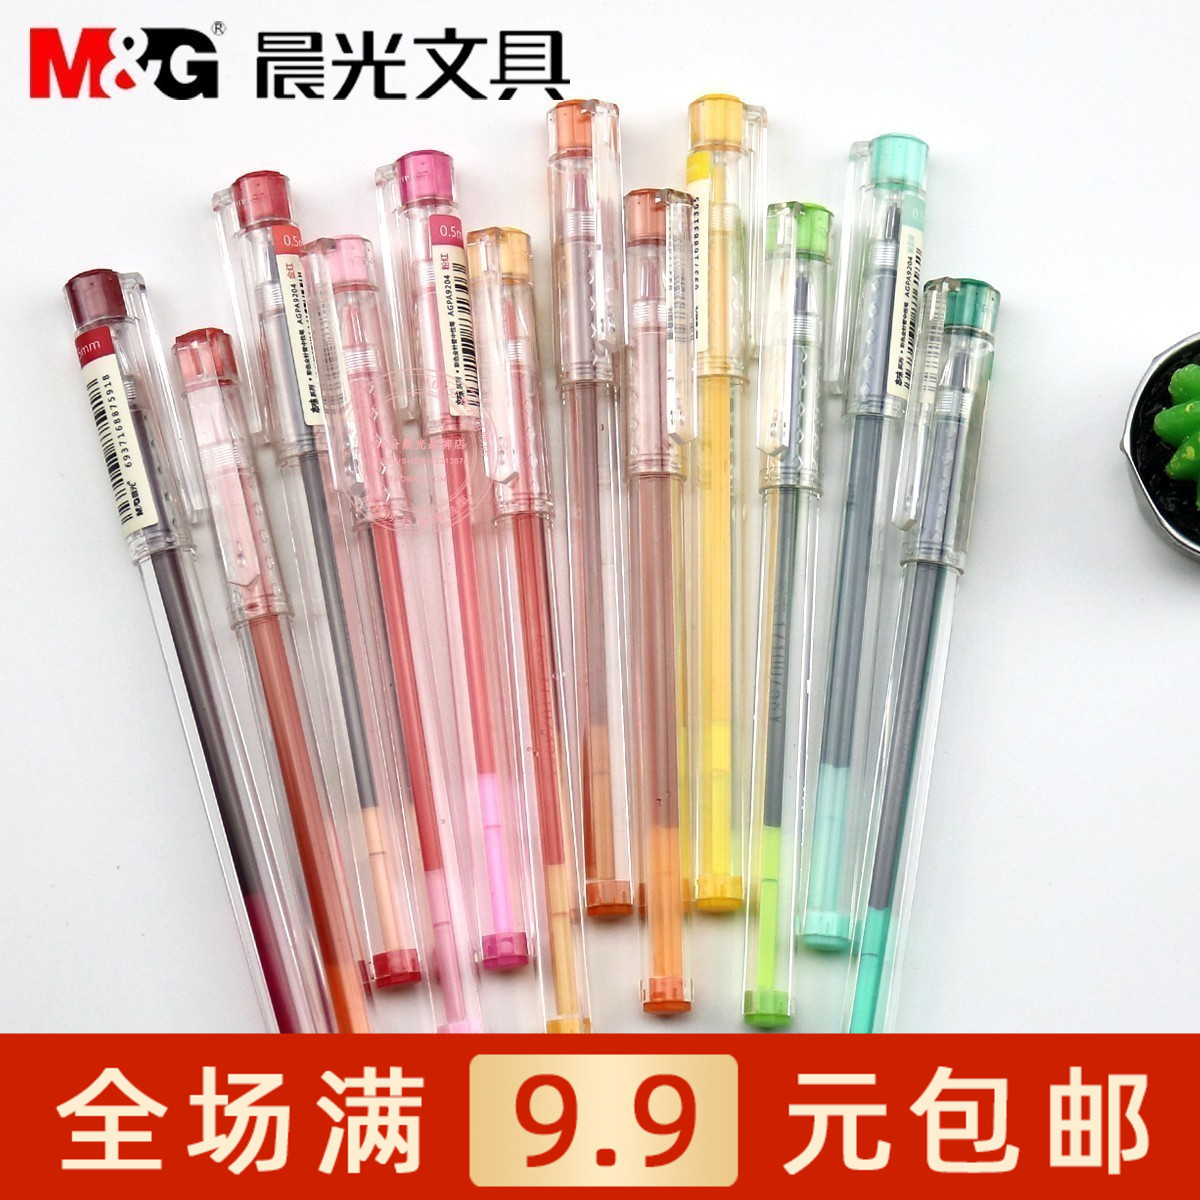 包邮 晨光文具AGPA9204本味系列彩色全针管中性笔24色0.5mm水笔满